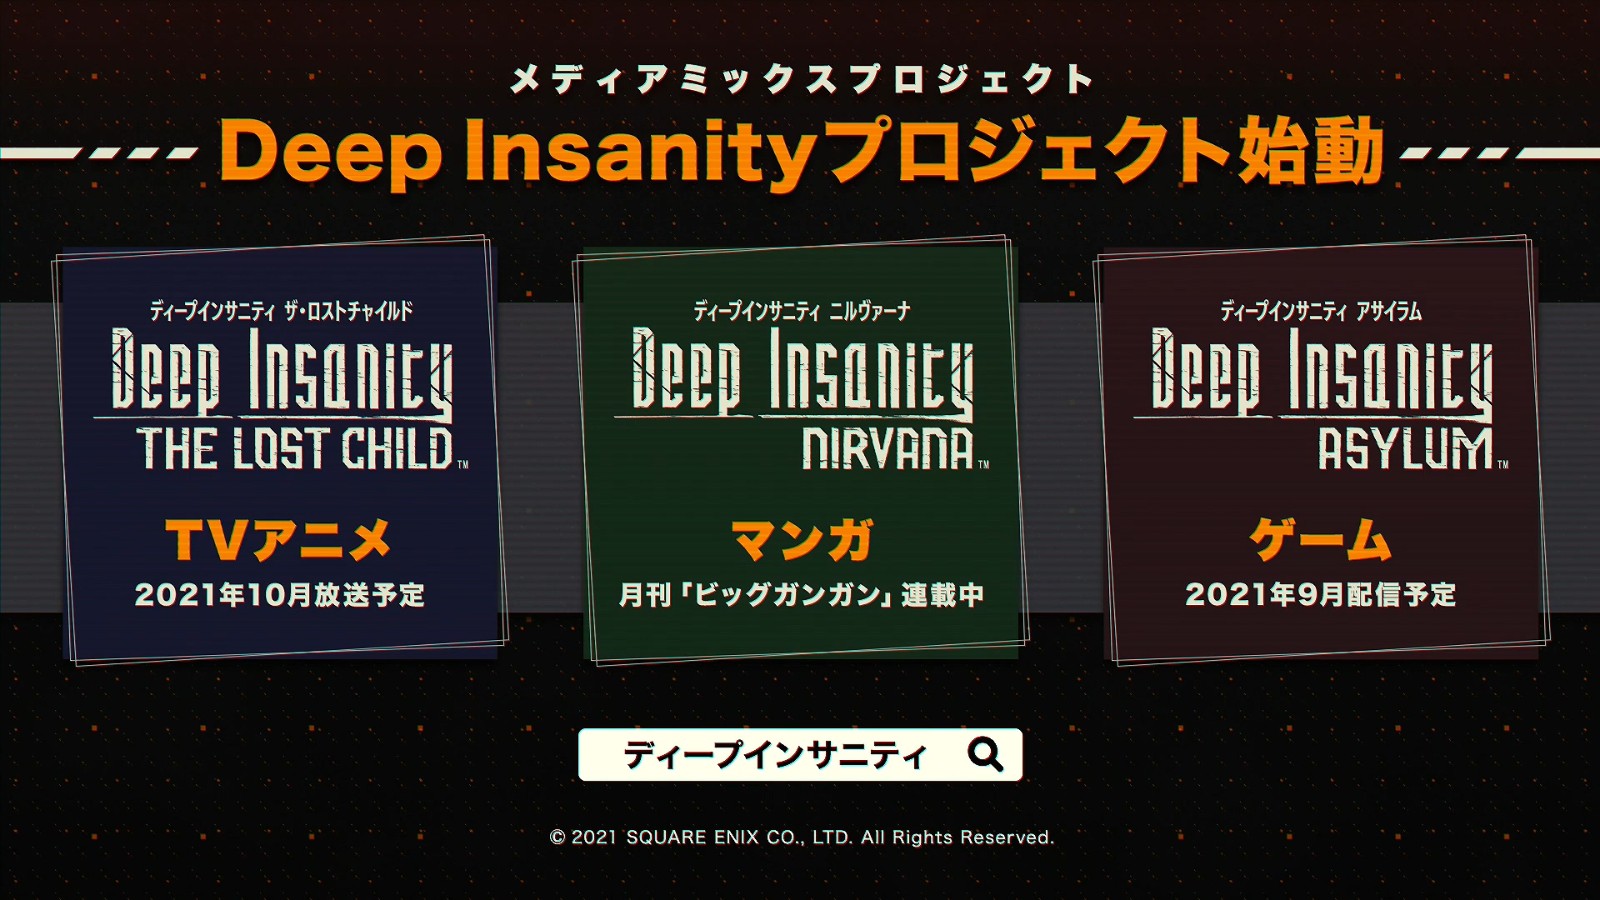 SE跨媒体企划《Deep Insanity》发布 游戏9月登陆PC/移动端